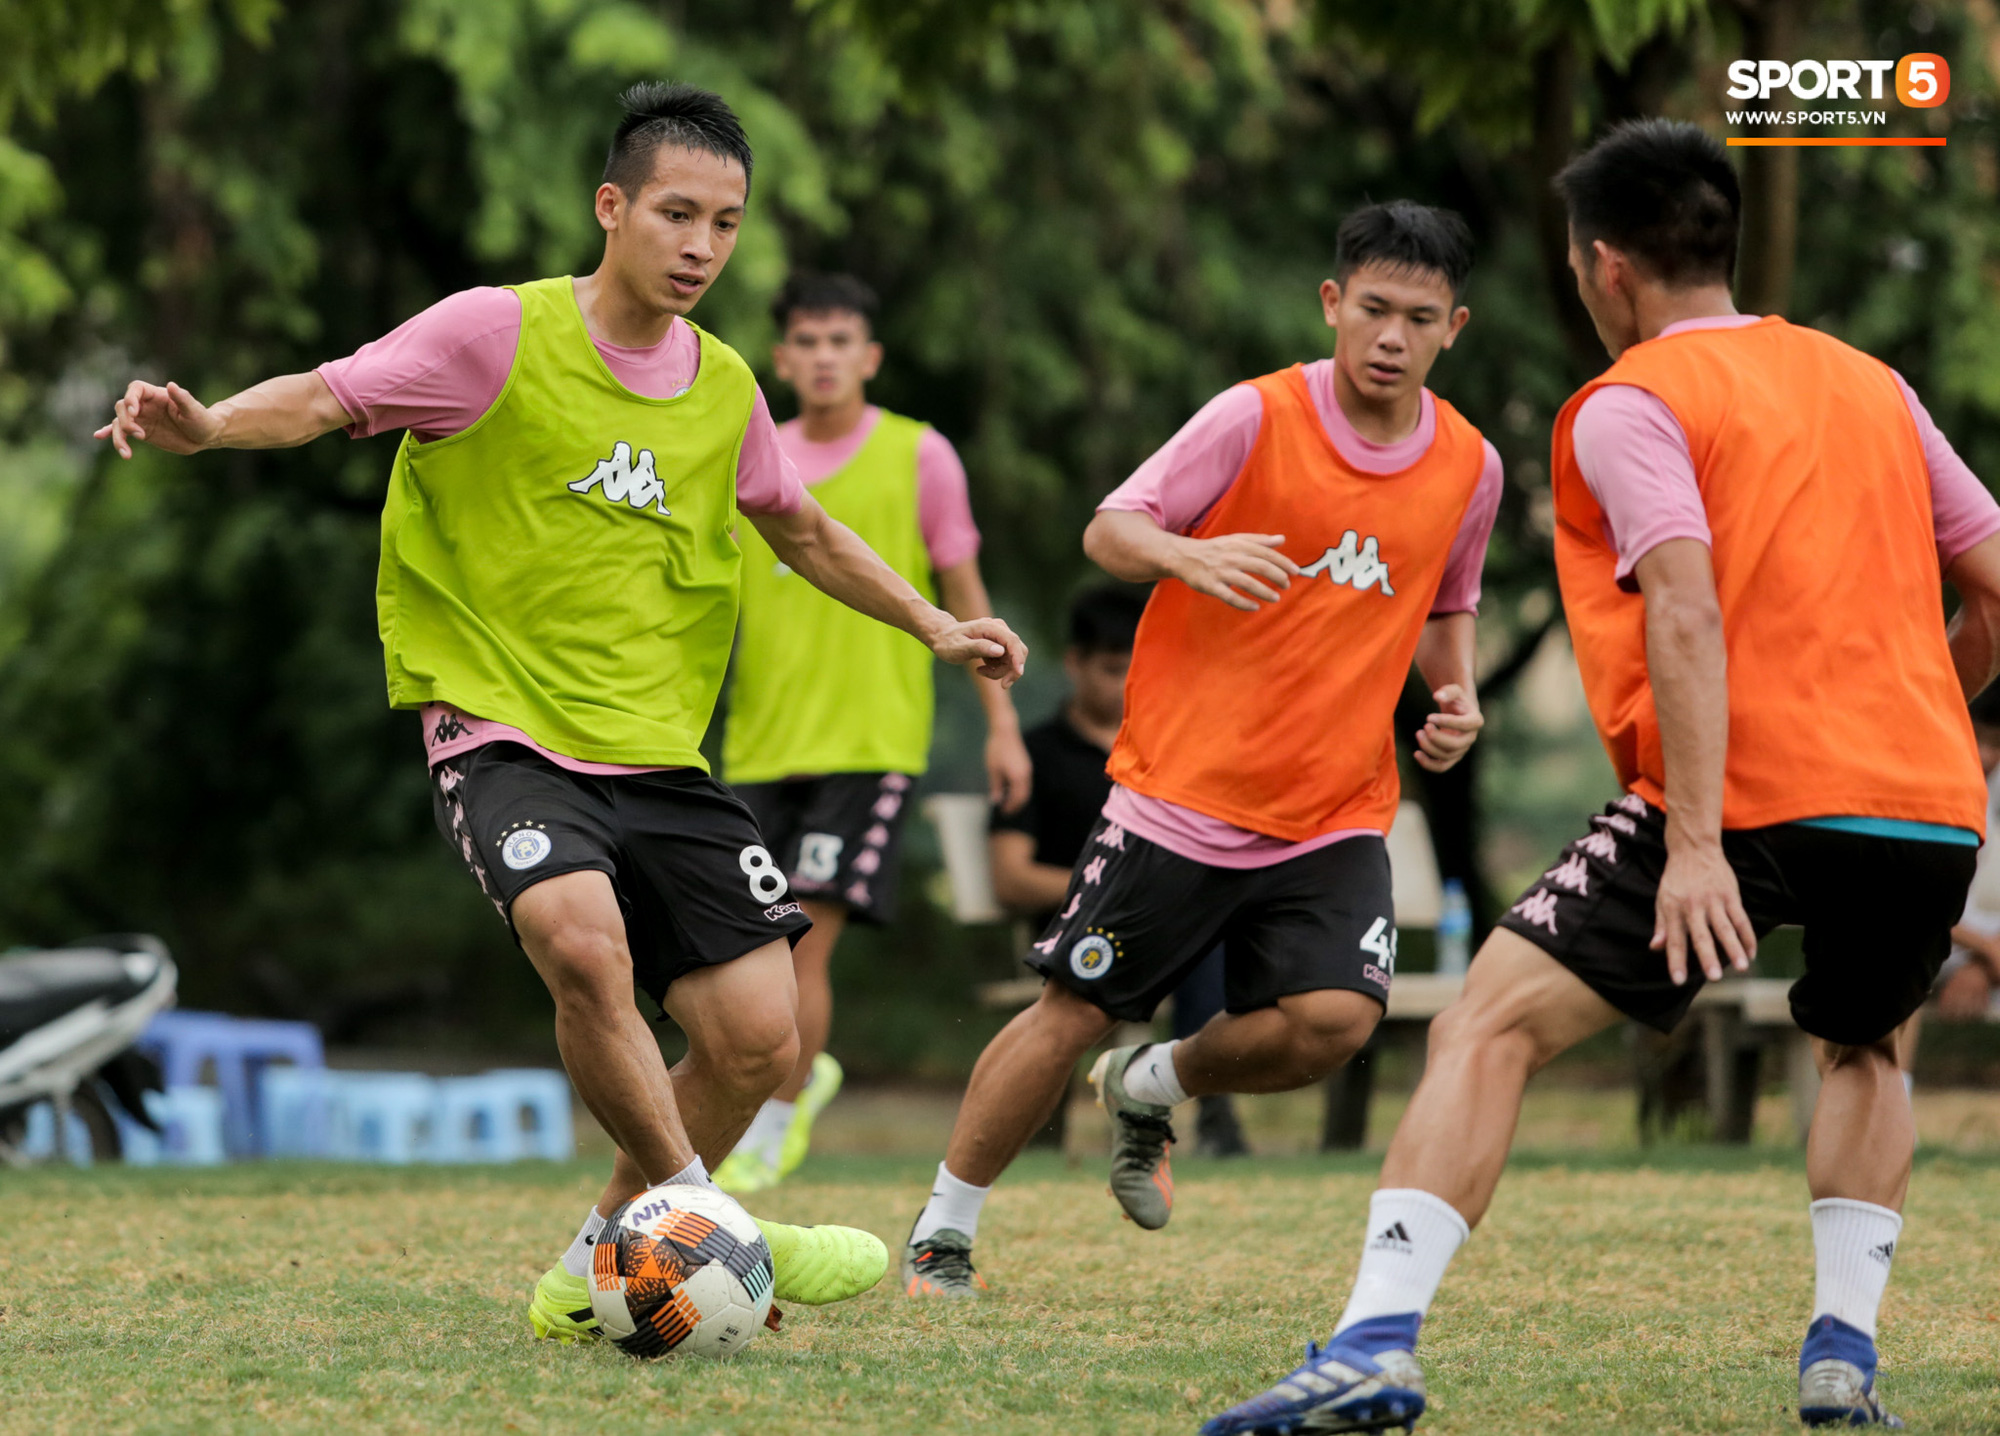 Quang Hải chưa hết chấn thương đã lại gặp bệnh, ngồi lẻ loi xem đồng đội tập luyện trước trận derby Hà Nội - Ảnh 5.